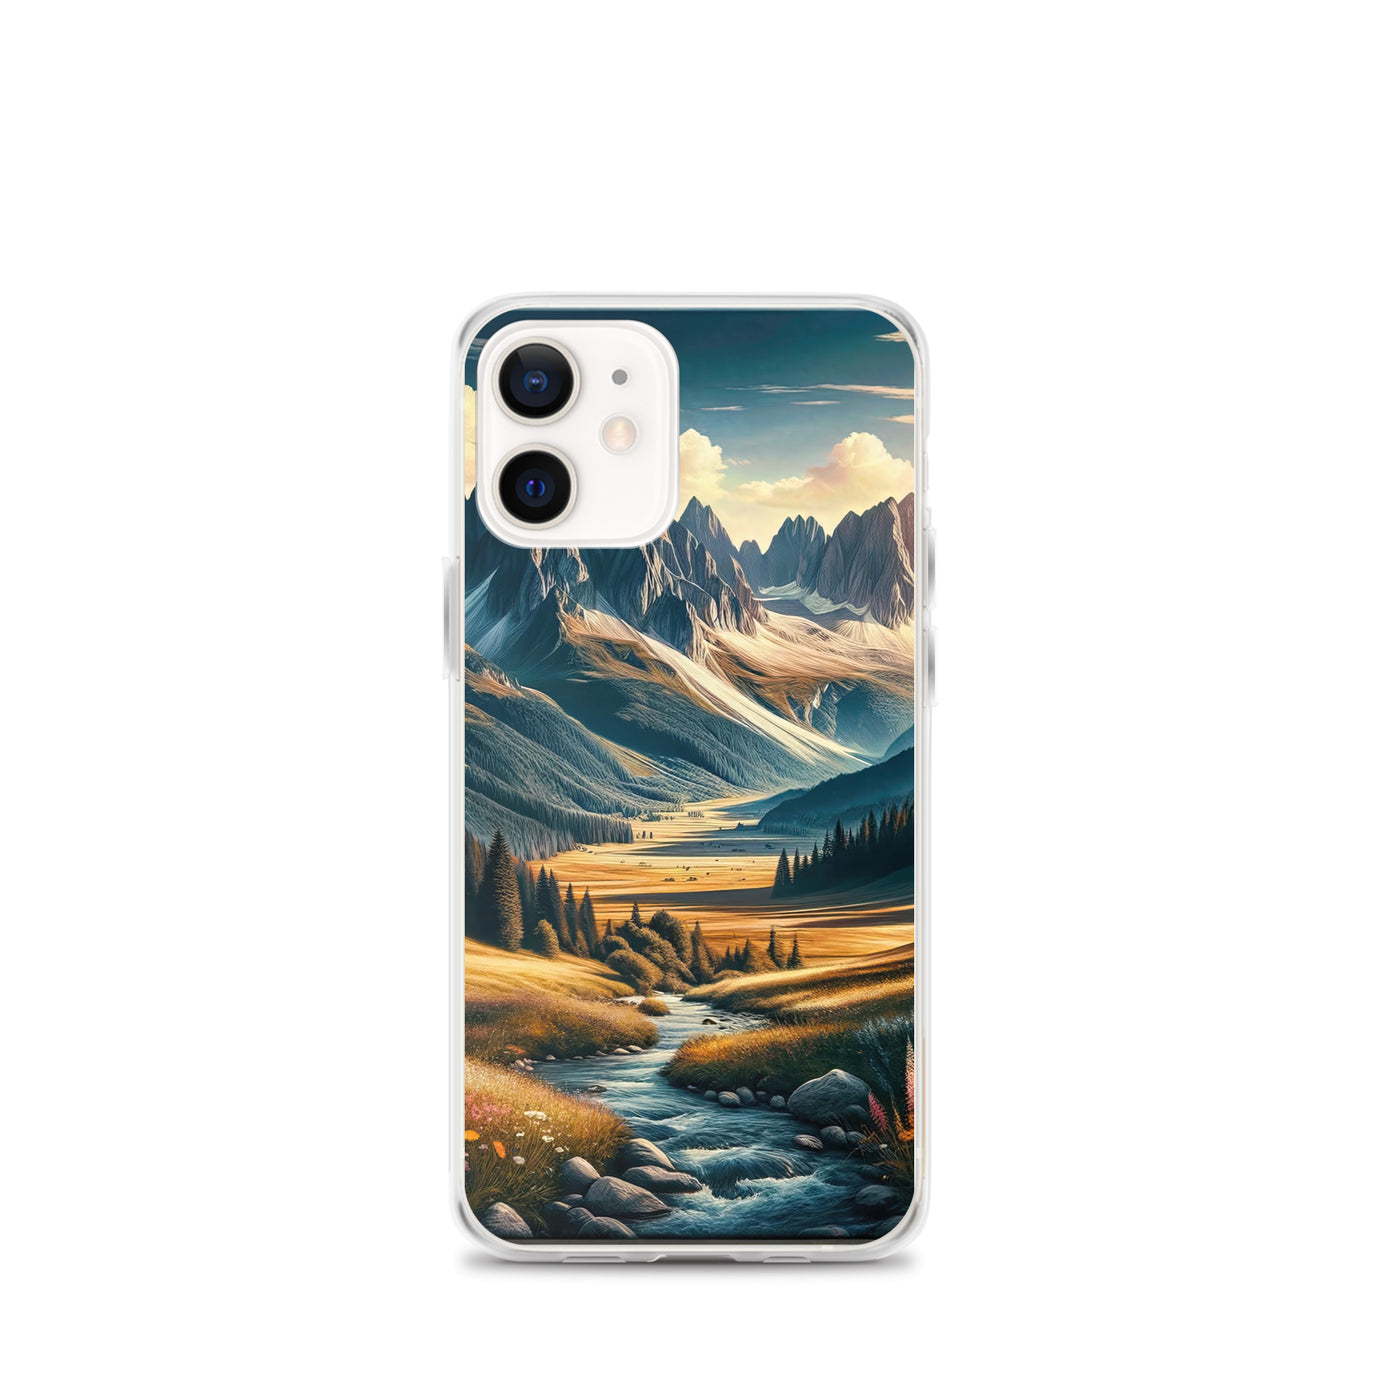 Quadratisches Kunstwerk der Alpen, majestätische Berge unter goldener Sonne - iPhone Schutzhülle (durchsichtig) berge xxx yyy zzz iPhone 12 mini